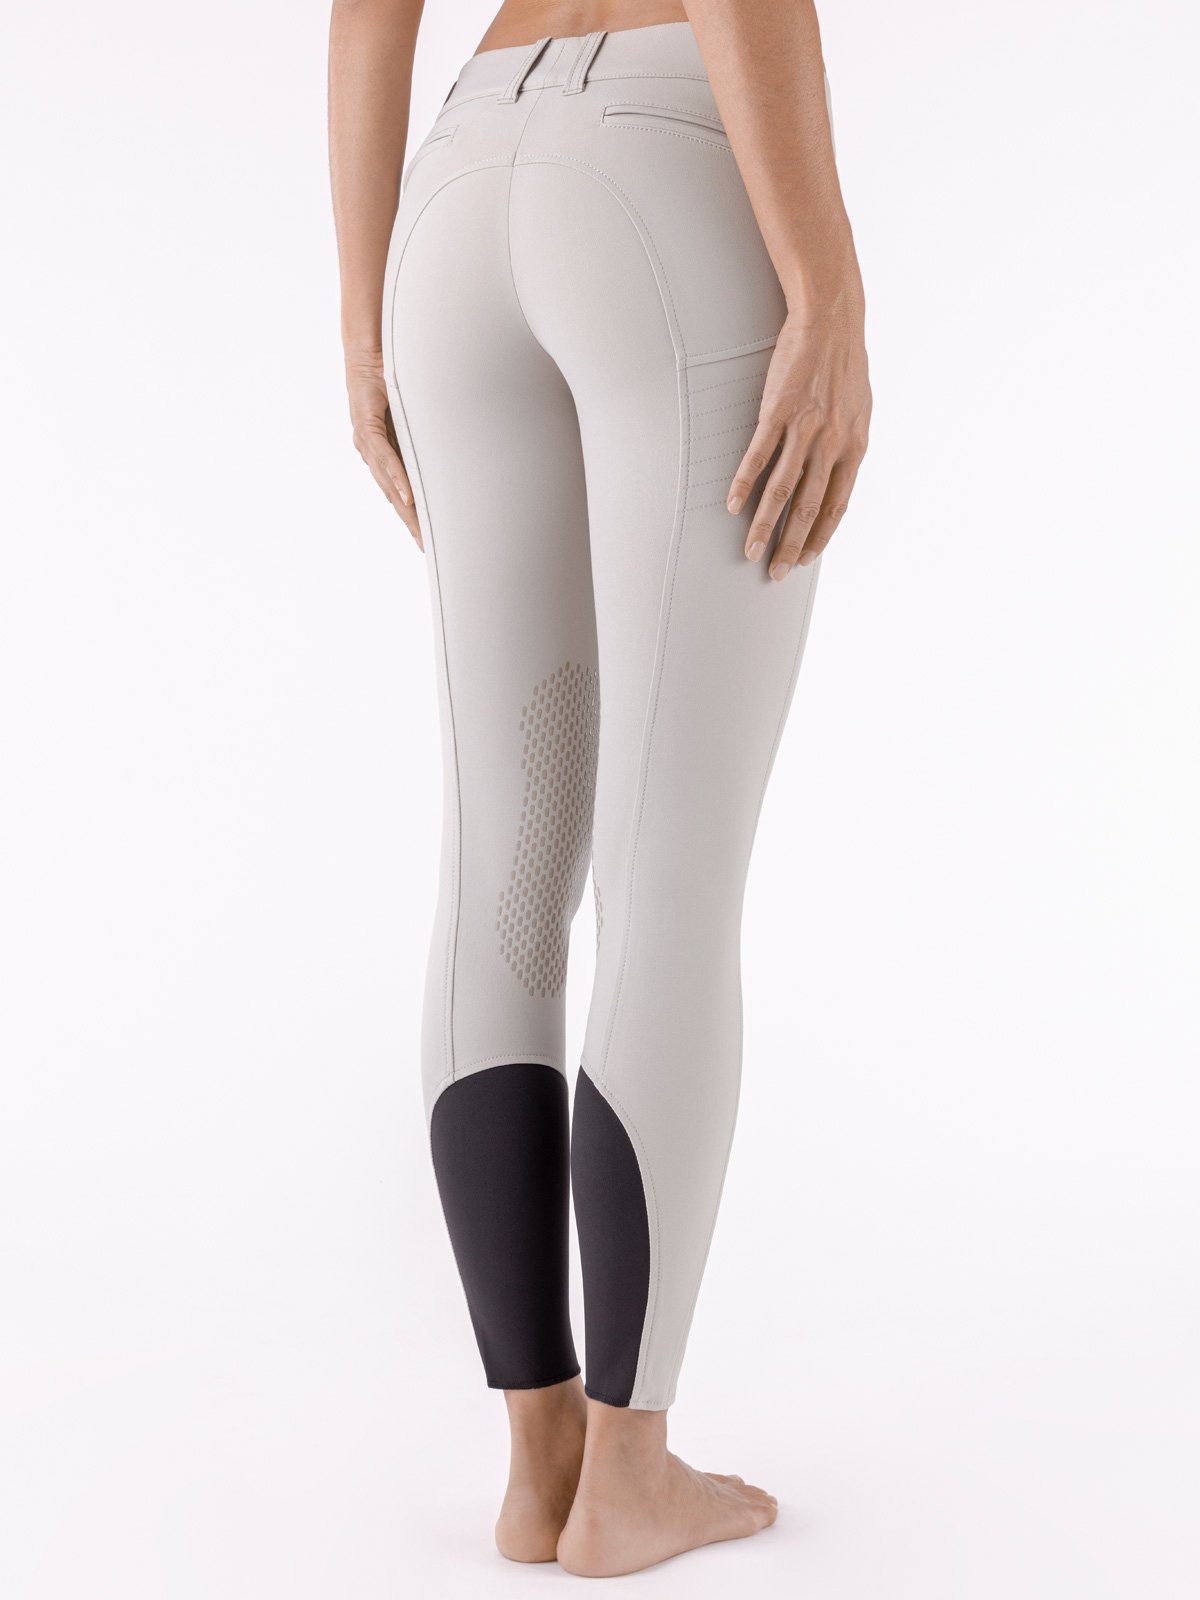 Pantalone Equiline donna con grip al ginocchio modello X Shape   - foto 2